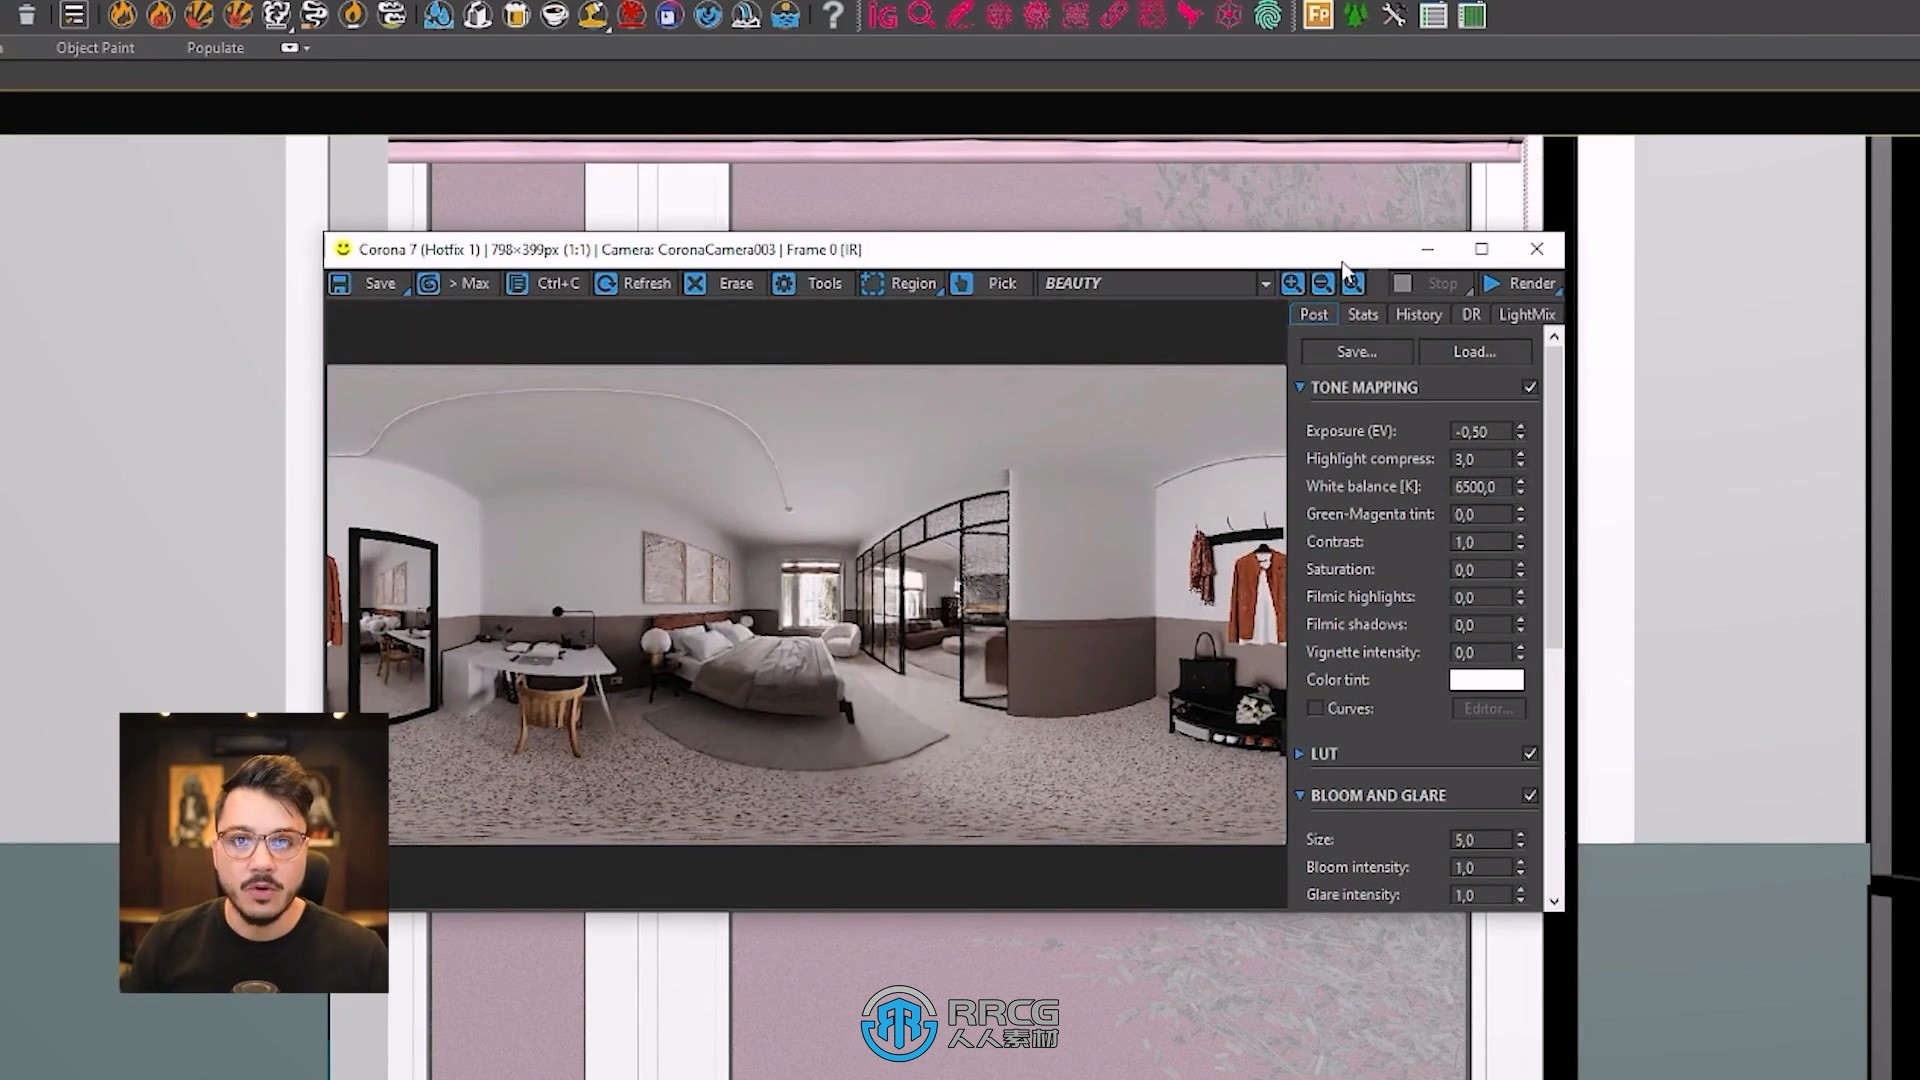 3dsmax建筑室内和室外可视化制作大师班视频教程